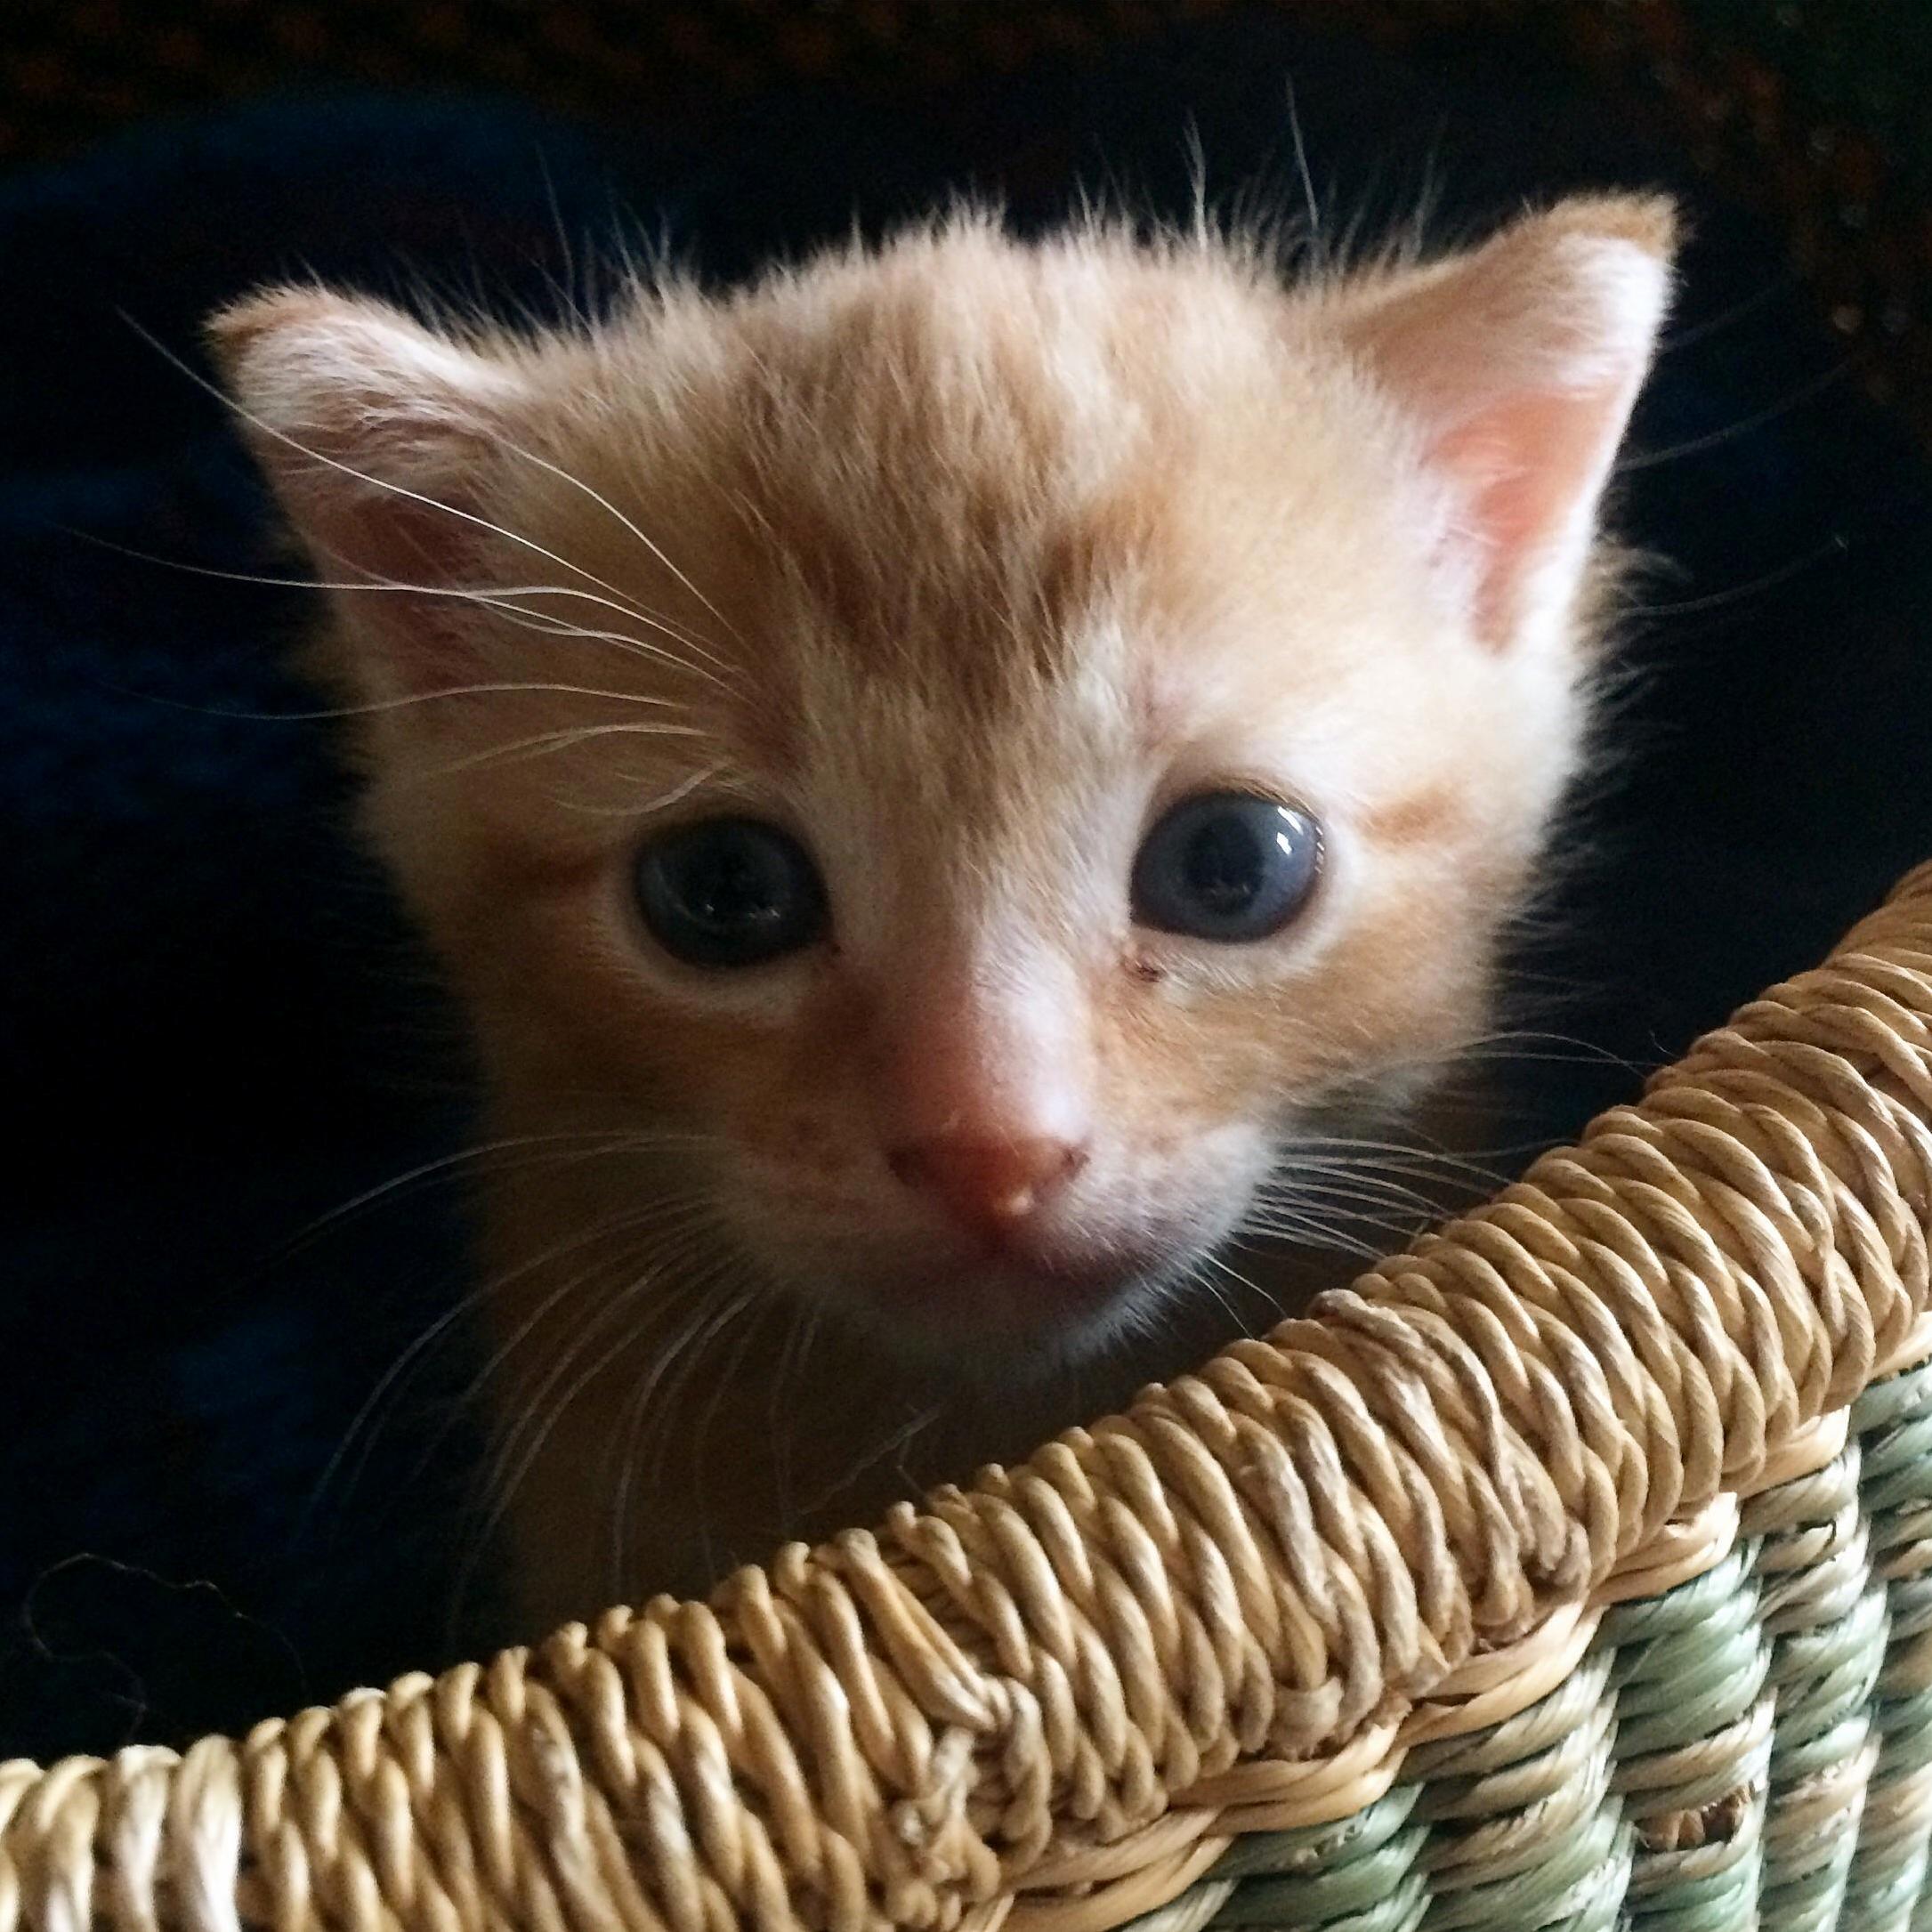 Little kitten in a basket